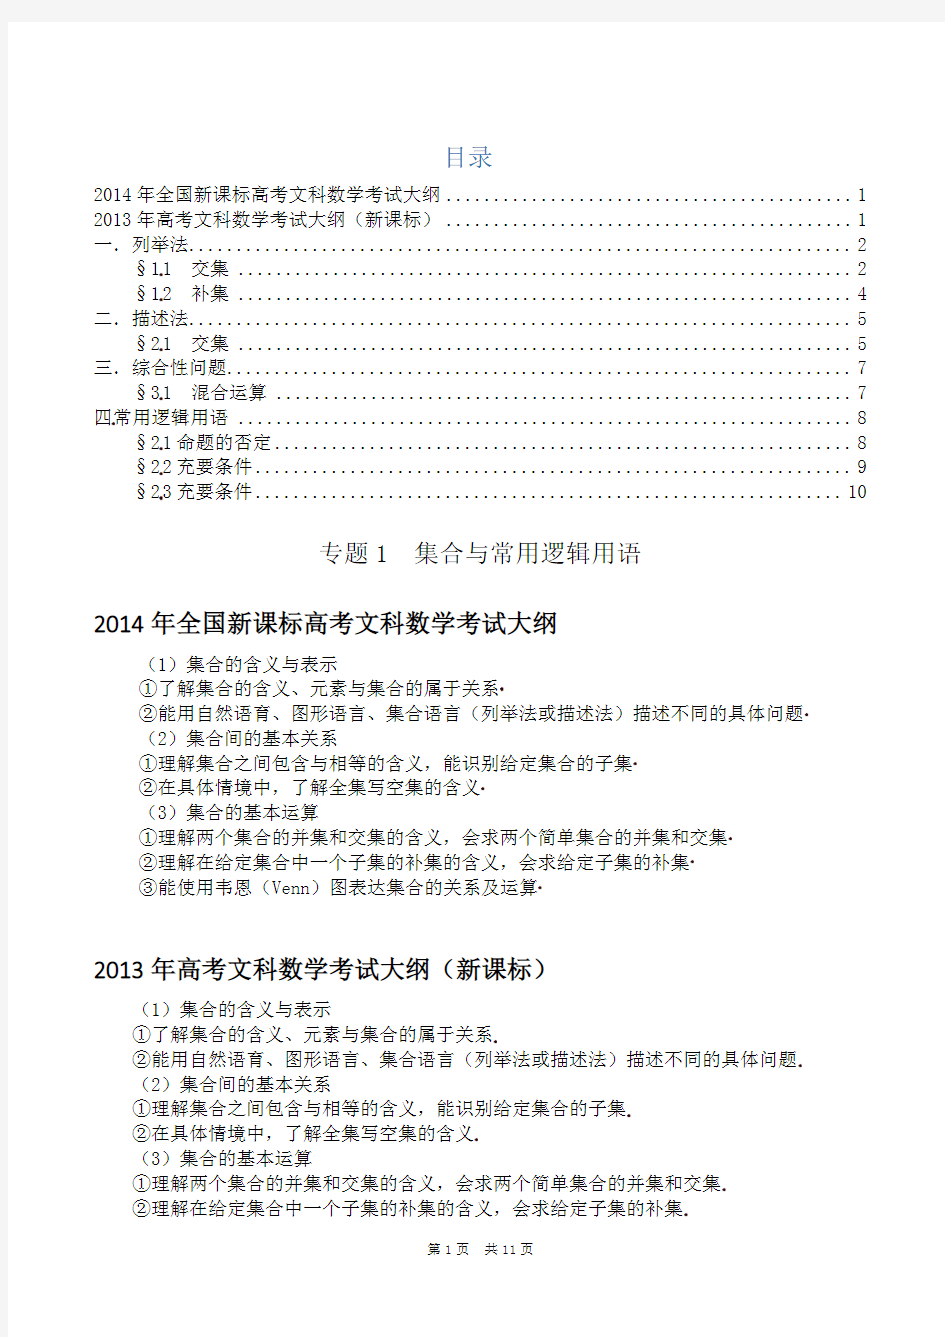 集合与常用逻辑用语-2014年高考文科数学试题分类解析(研究版)